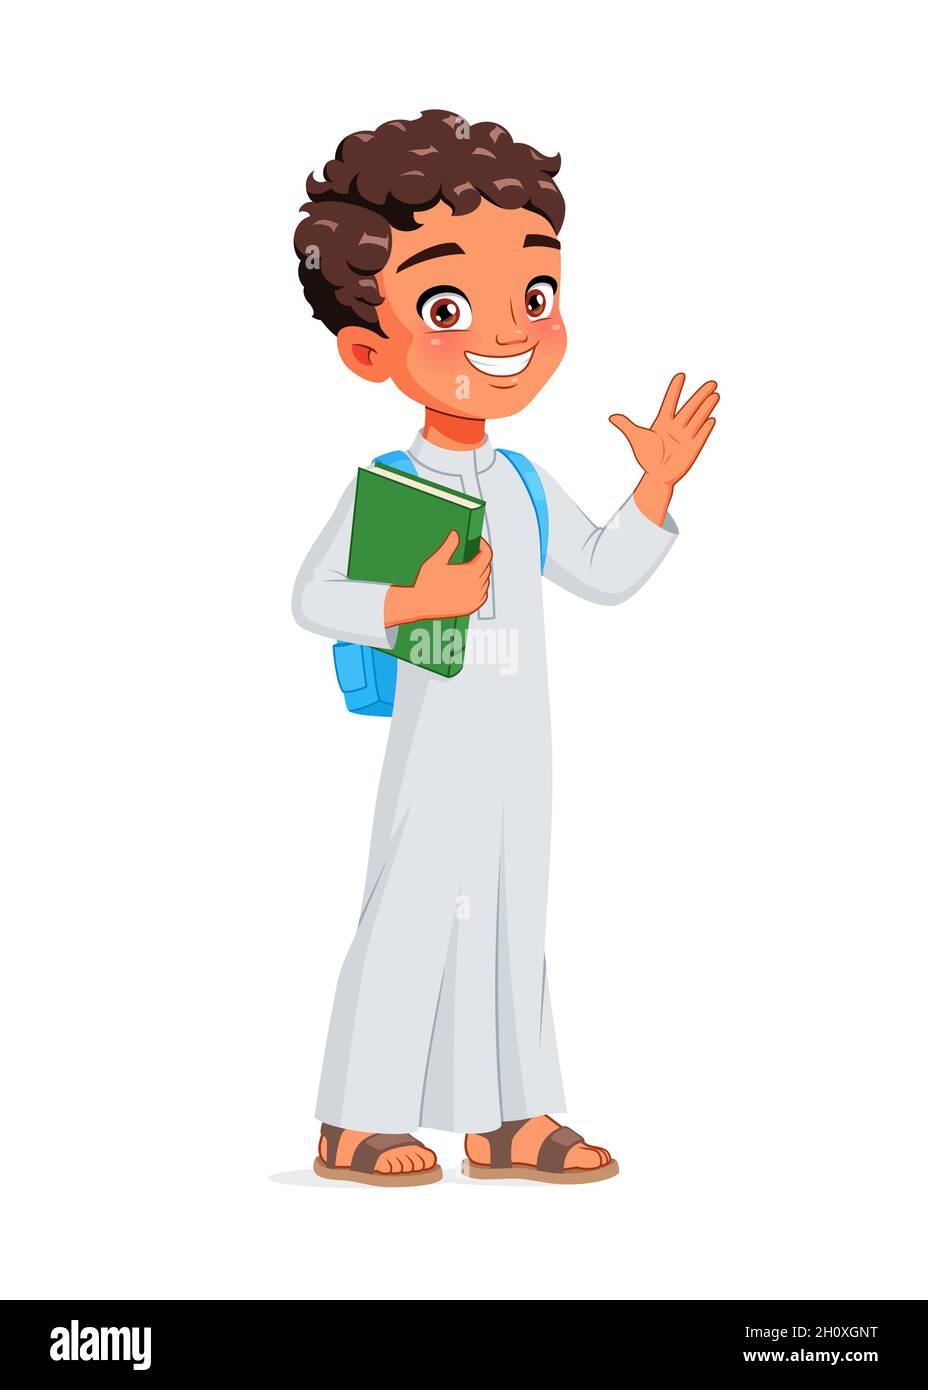 Arab school boy greeting. Cartoon vector illustration. Stock Vector